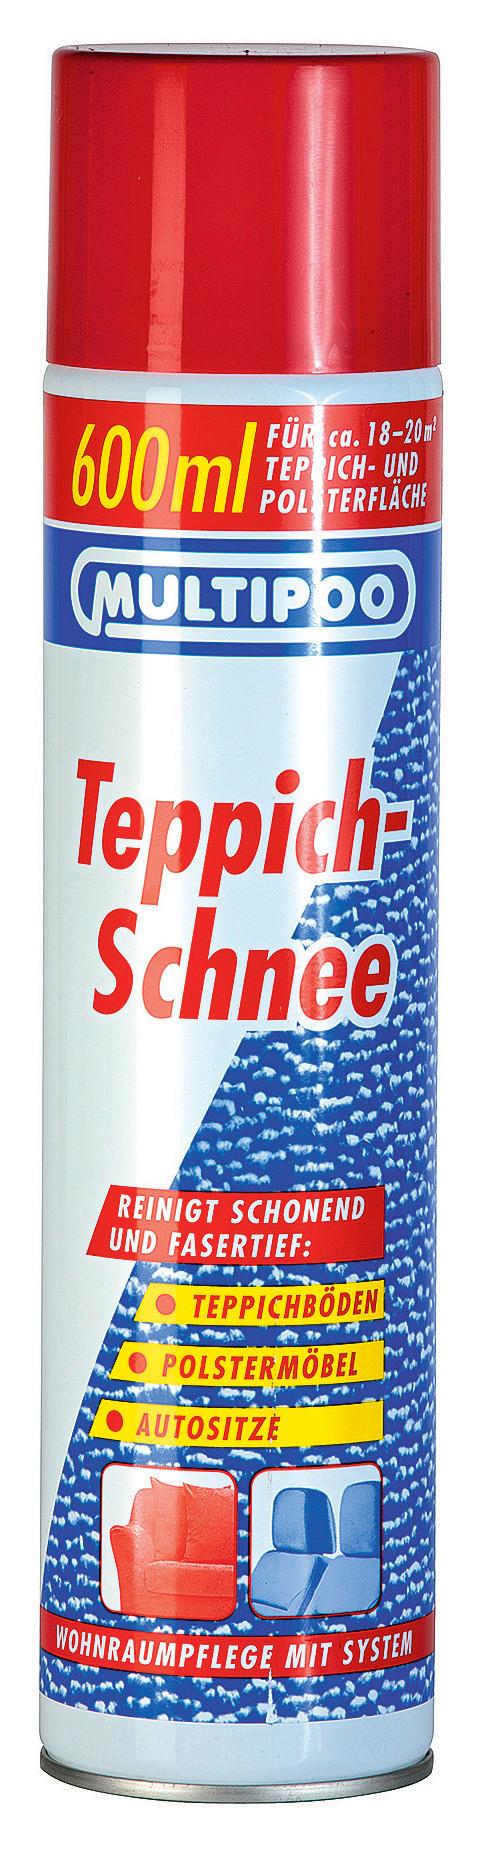 Teppichreiniger Multipoo Teppich-Schnee 600 ml - Basics (6,2/28,5/6,2cm)